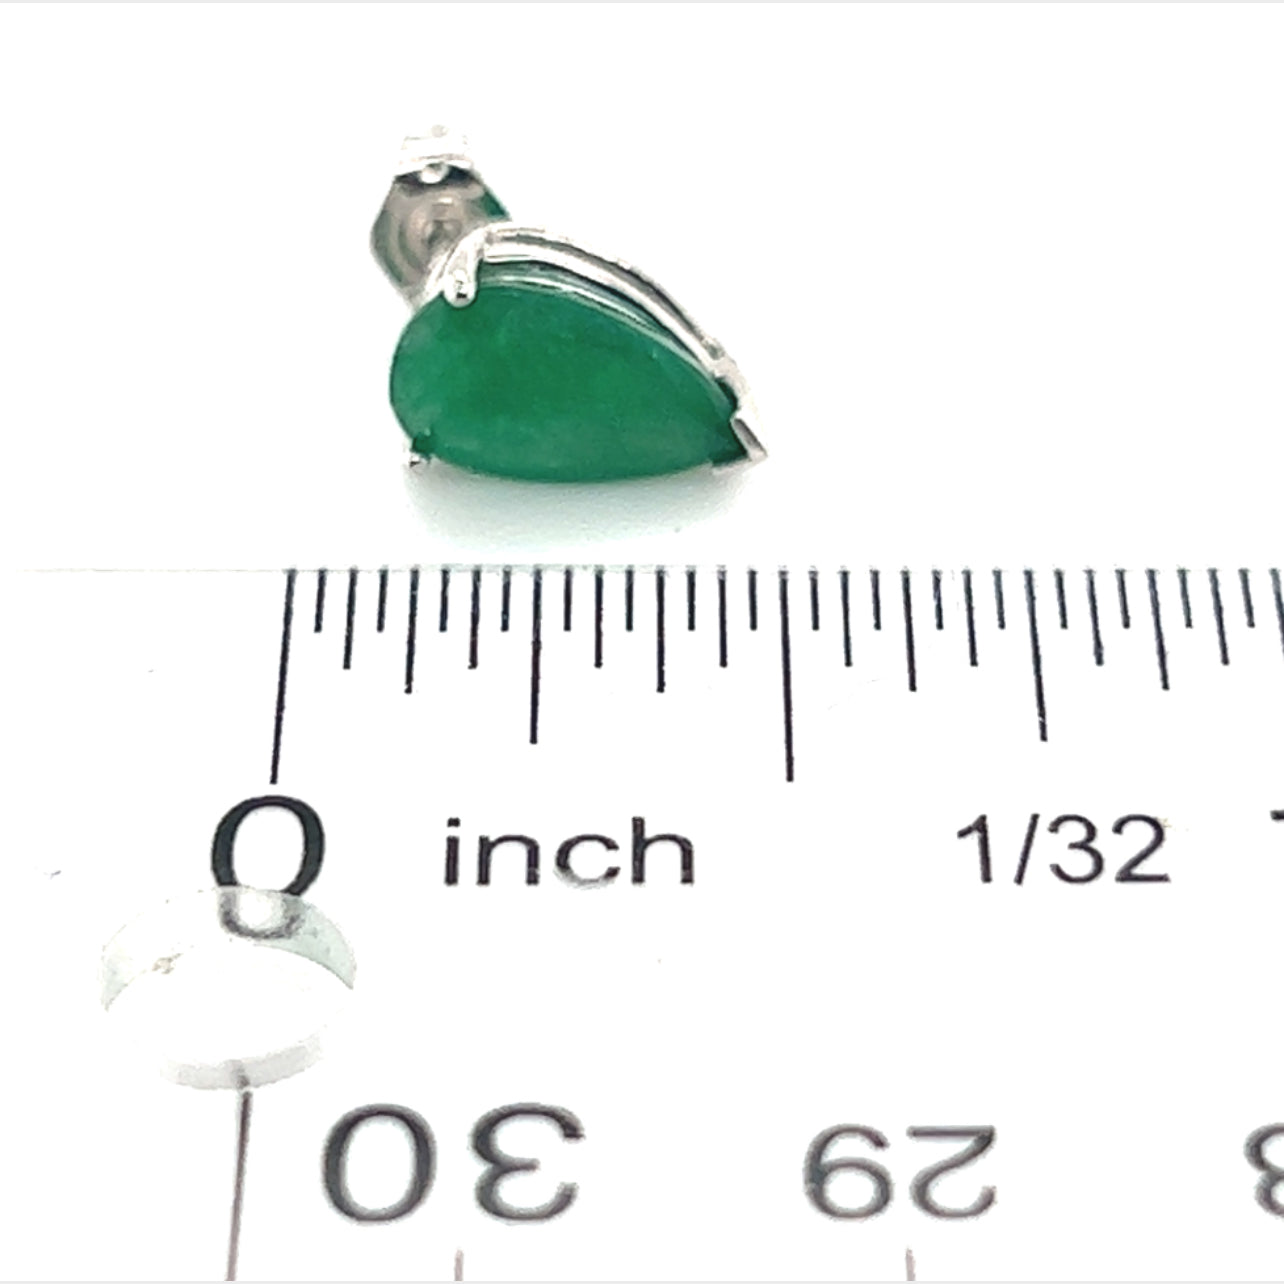 Natural Pear Shape Emerald Earrings 14k Gold 2.36 TCW Certified $2,450 210743 - Certified Fine Jewelry